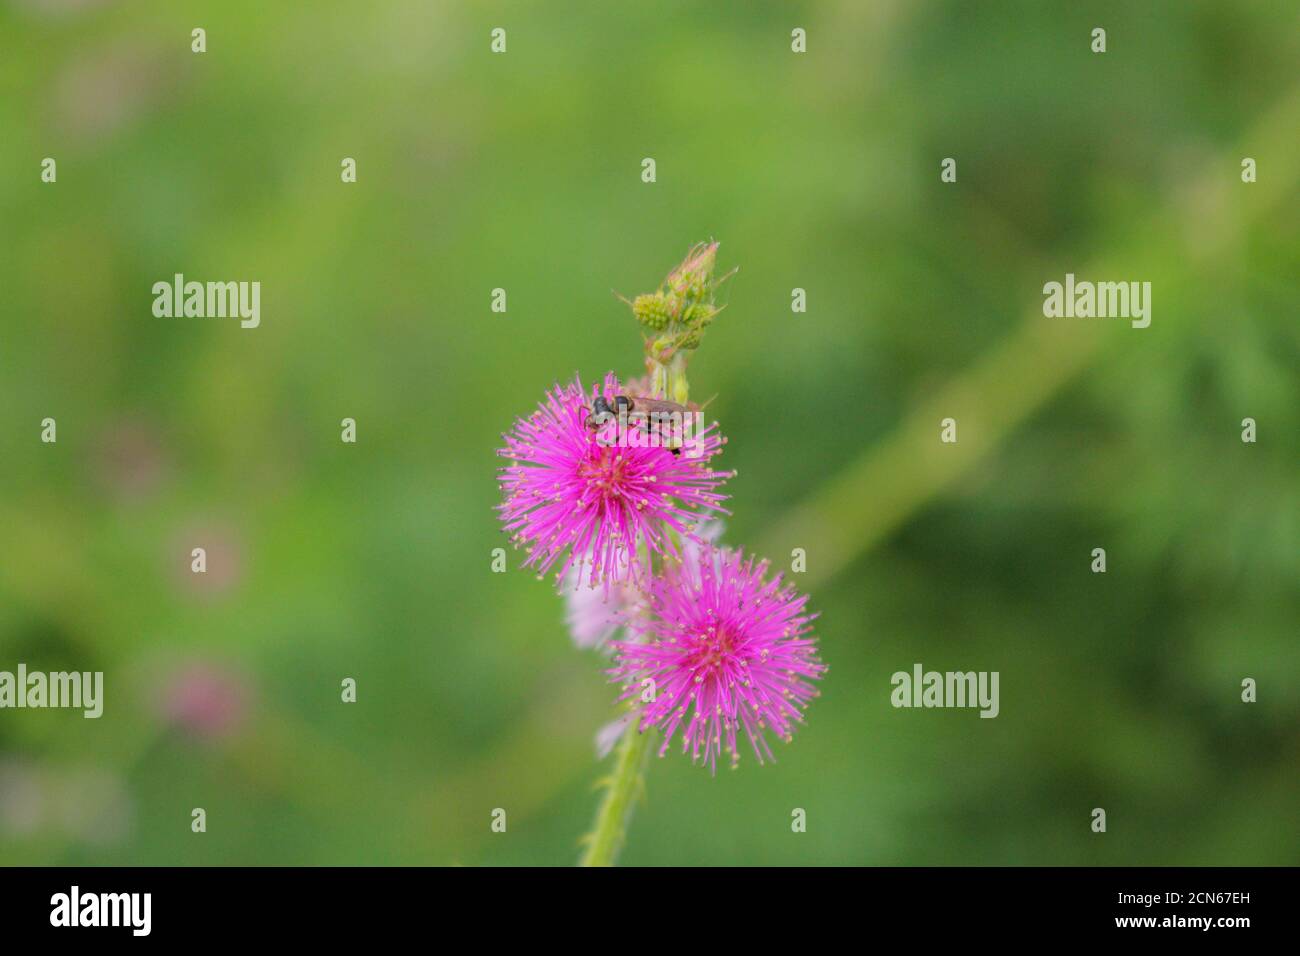 Schöne Dorn Blume, rosa Blume, Blume in asien Bilder Stockfoto